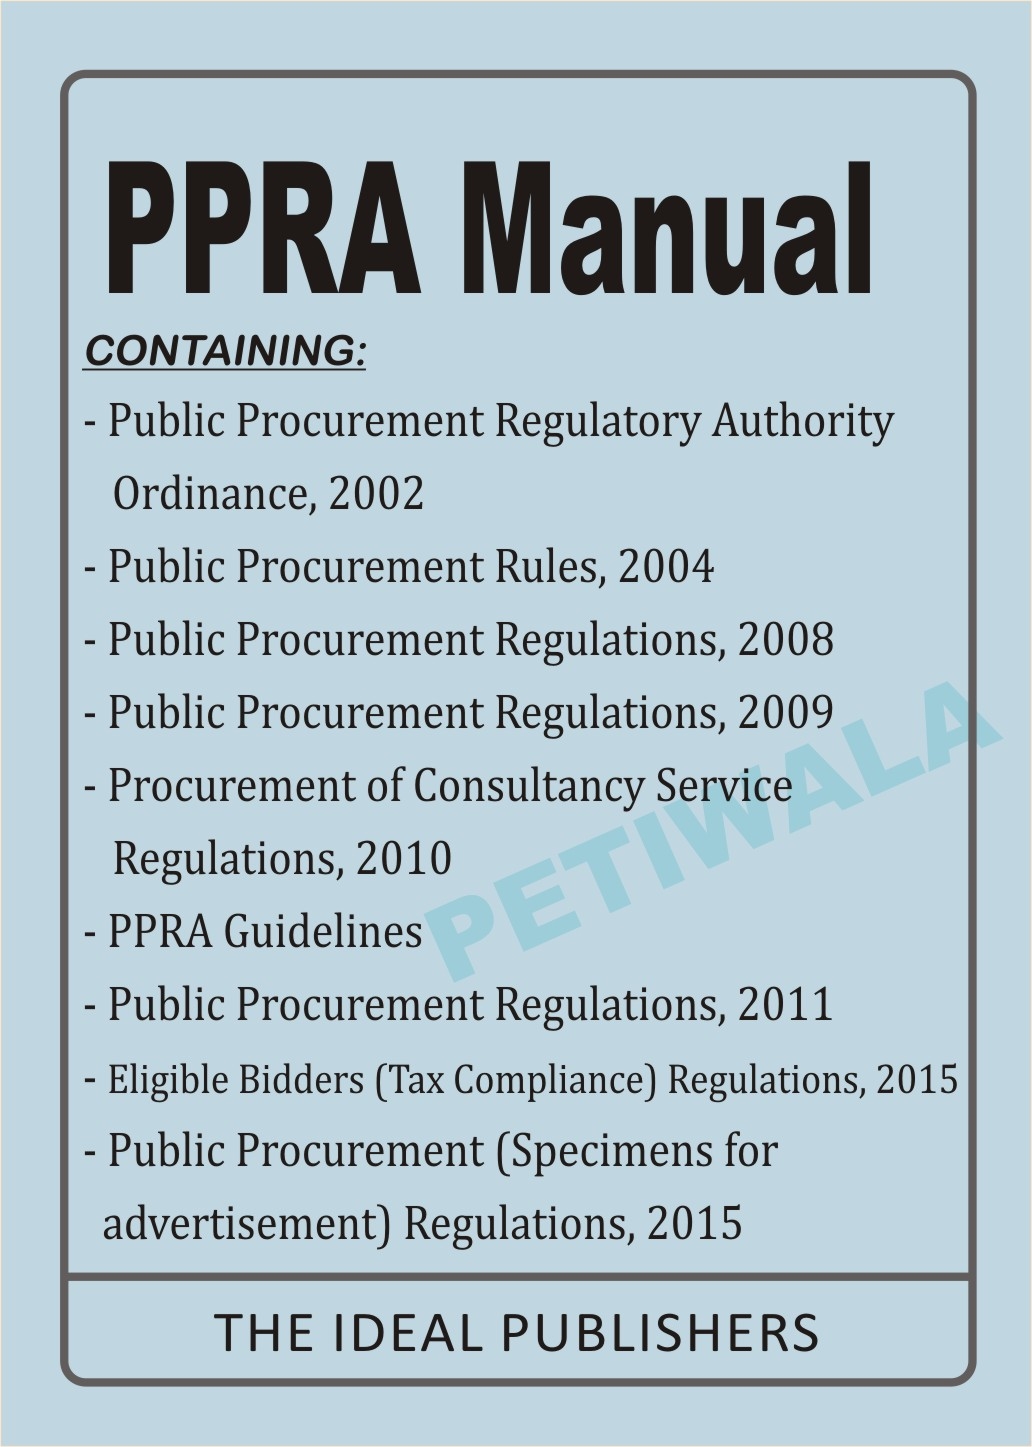 PPRA Manual